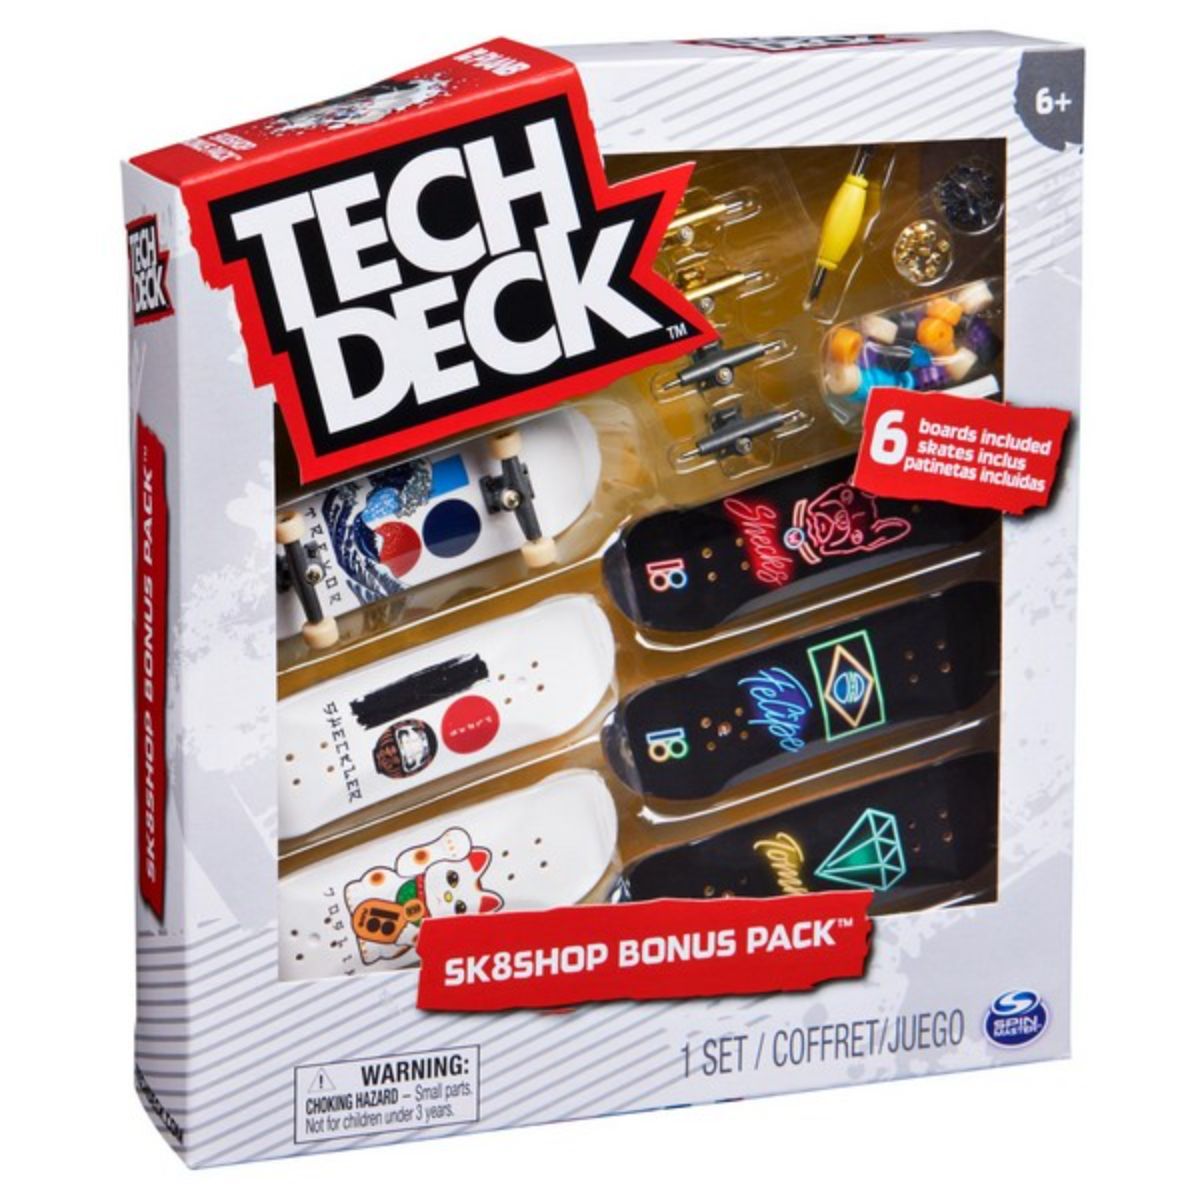 Set 6 mini placi skateboard, Tech Deck, Bonus Pack 20136697